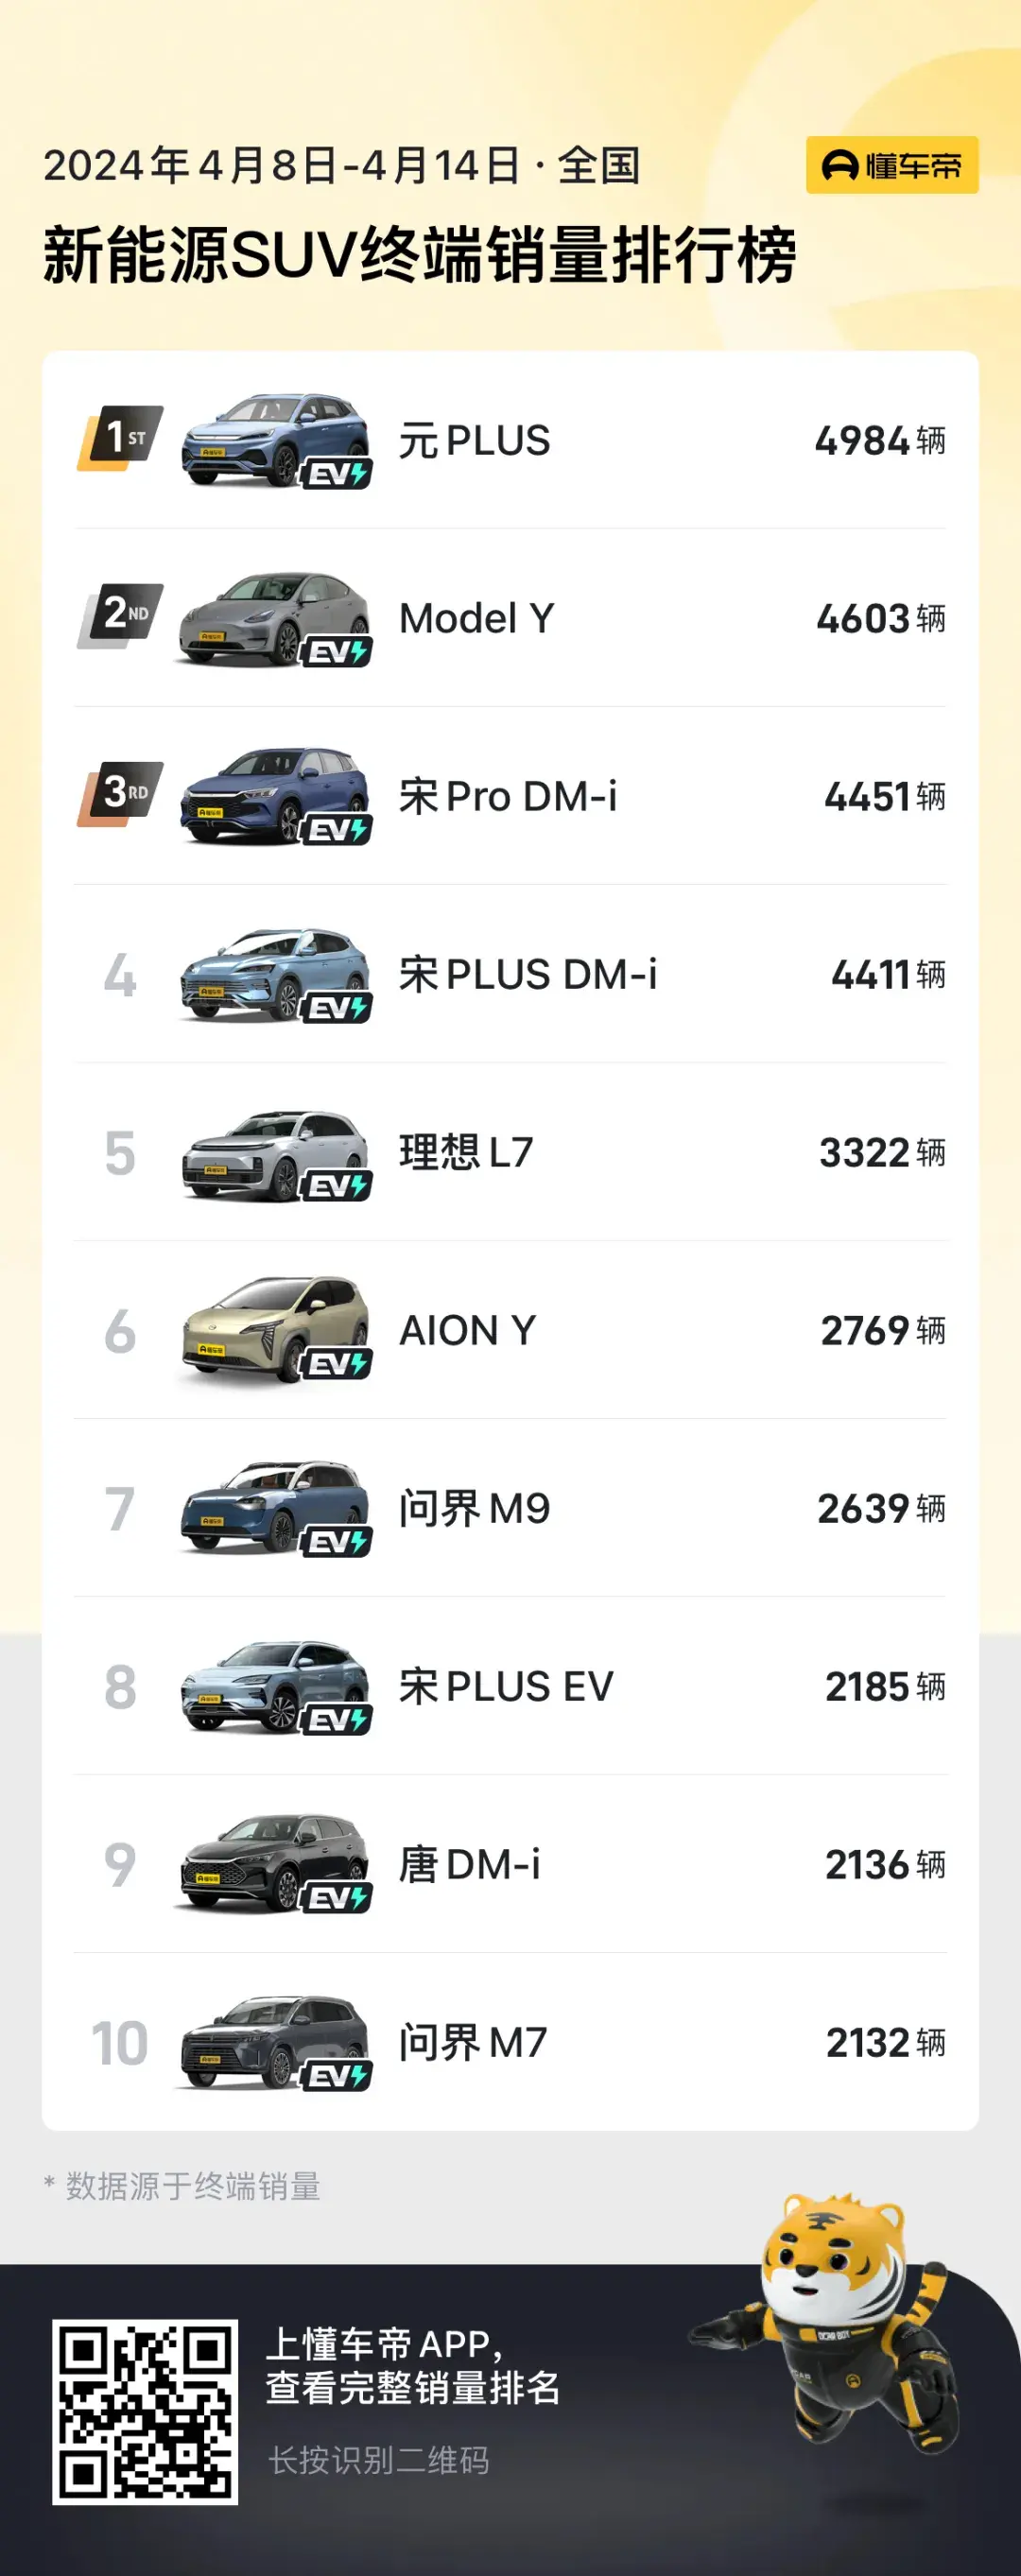 4月第二周新能源SUV销量排行榜，元PLUS夺冠，问界M7跌为第十名